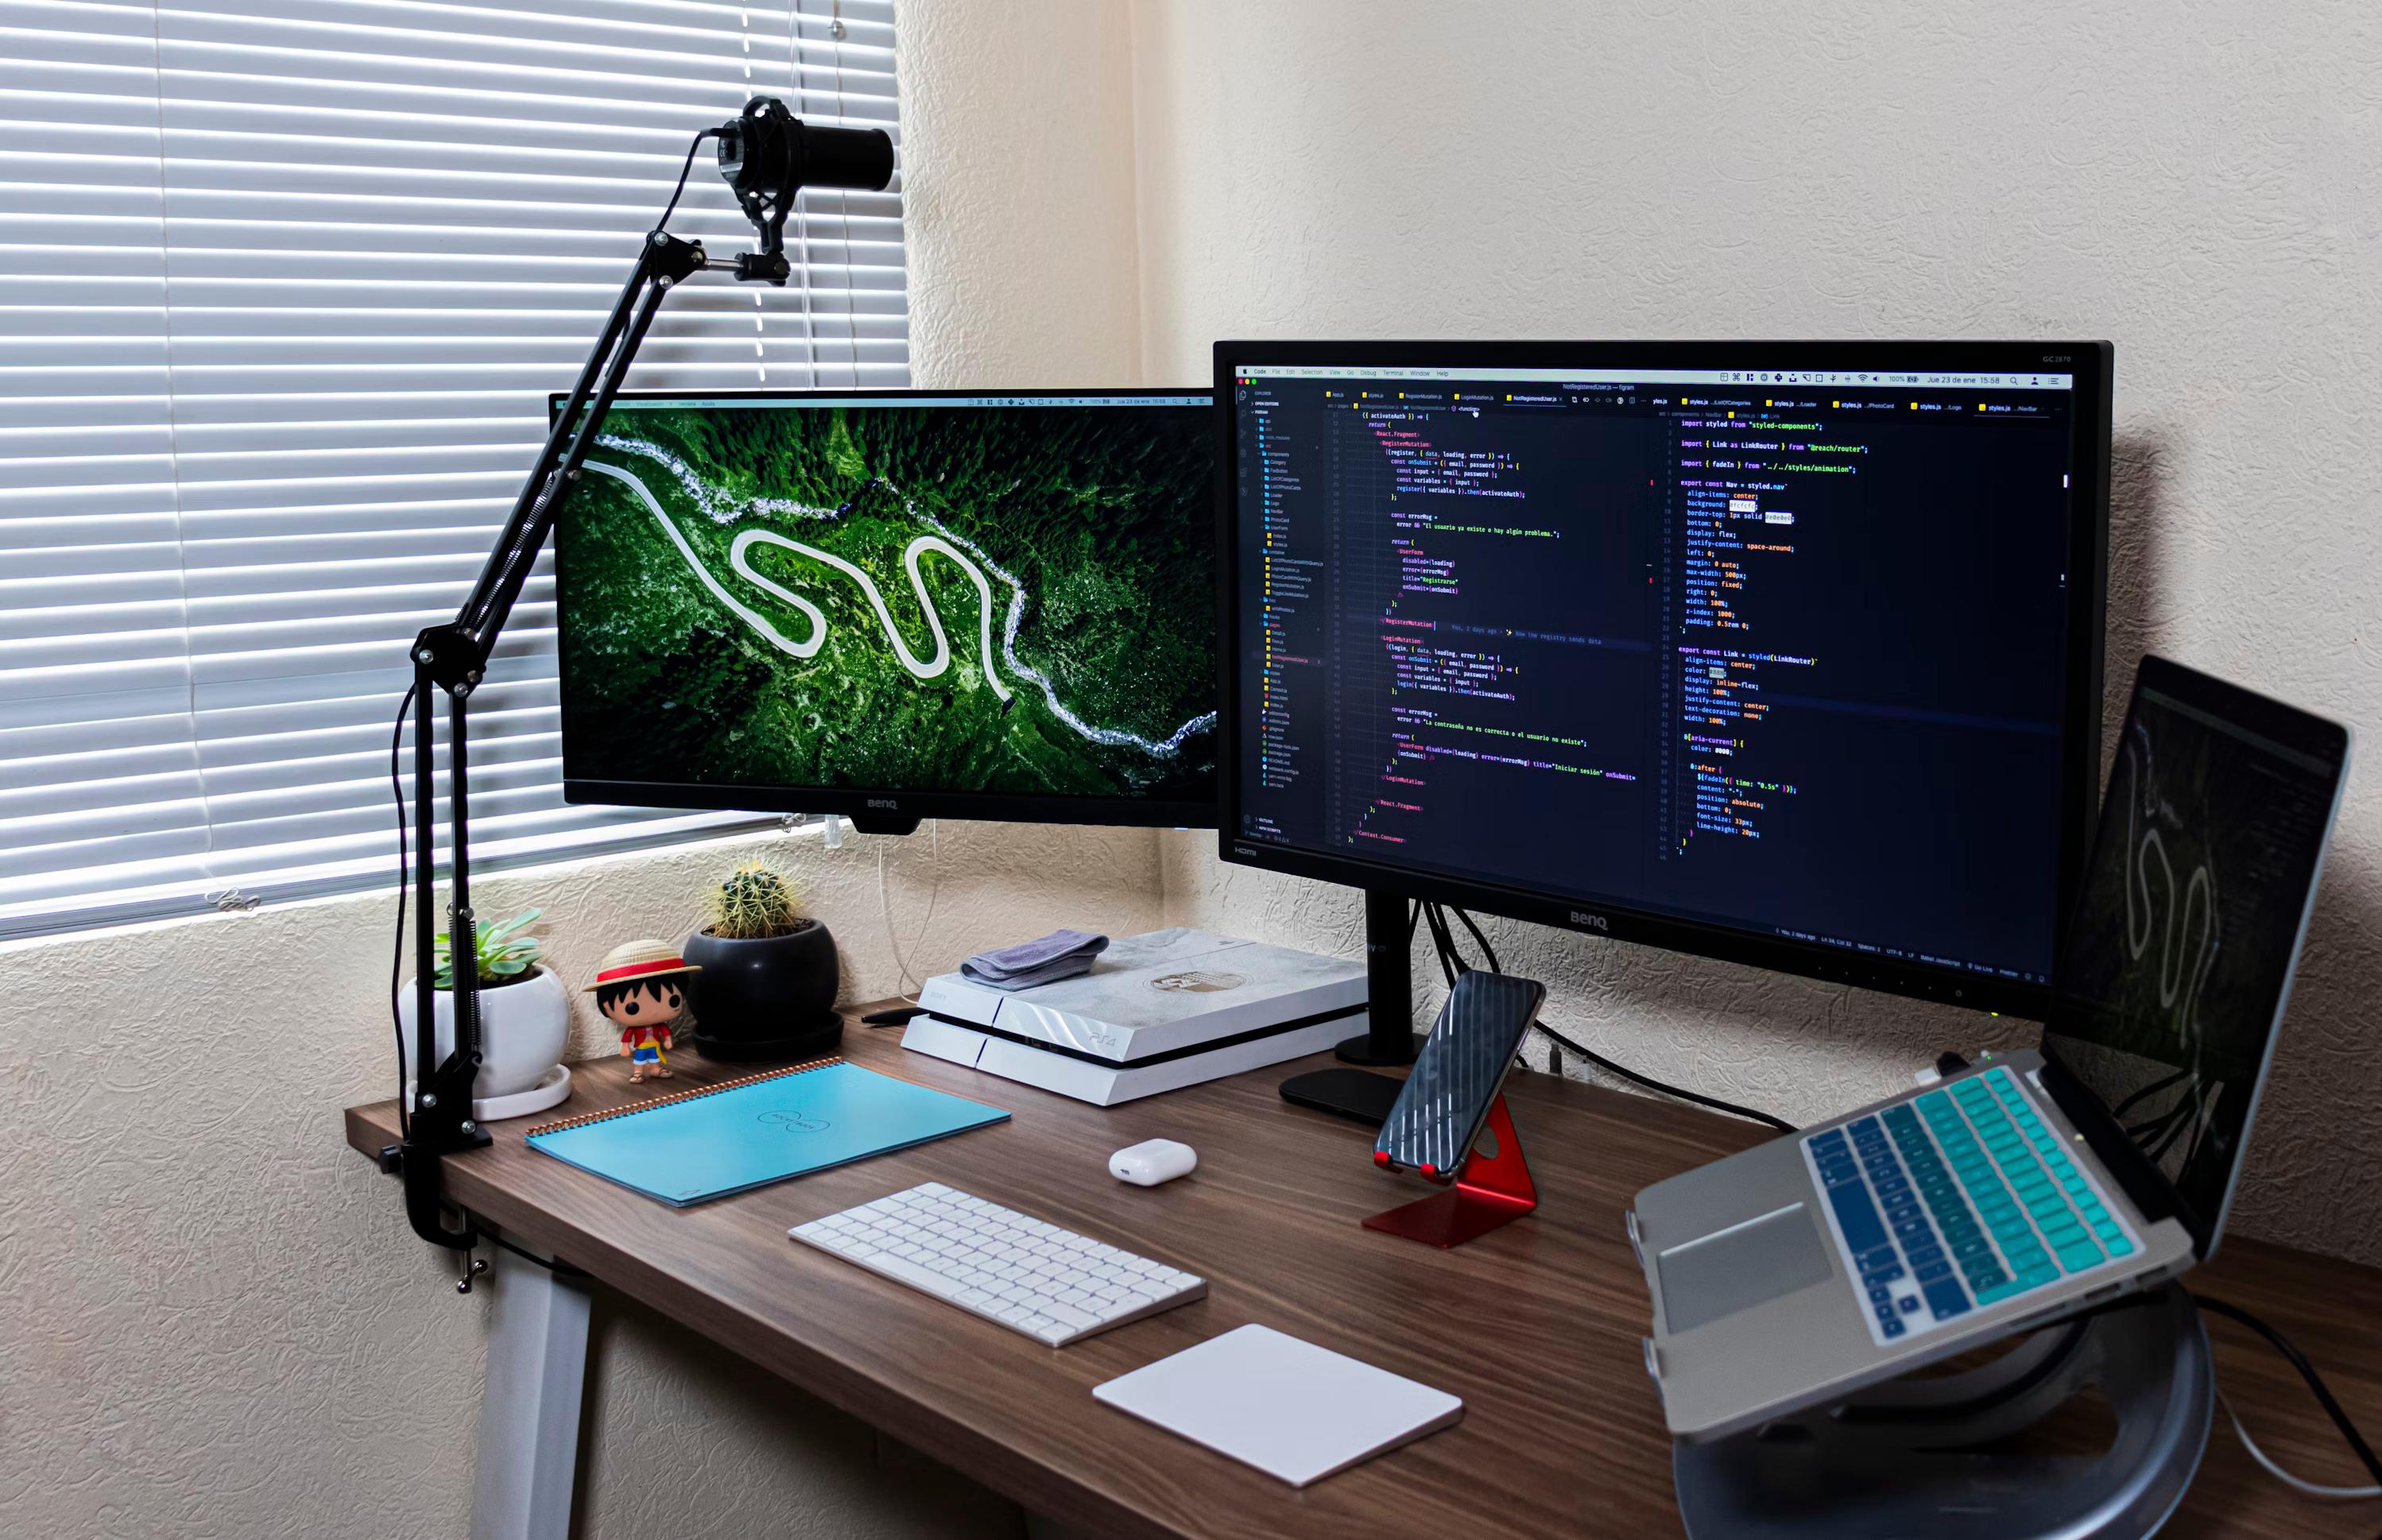 desktop setup with a laptop